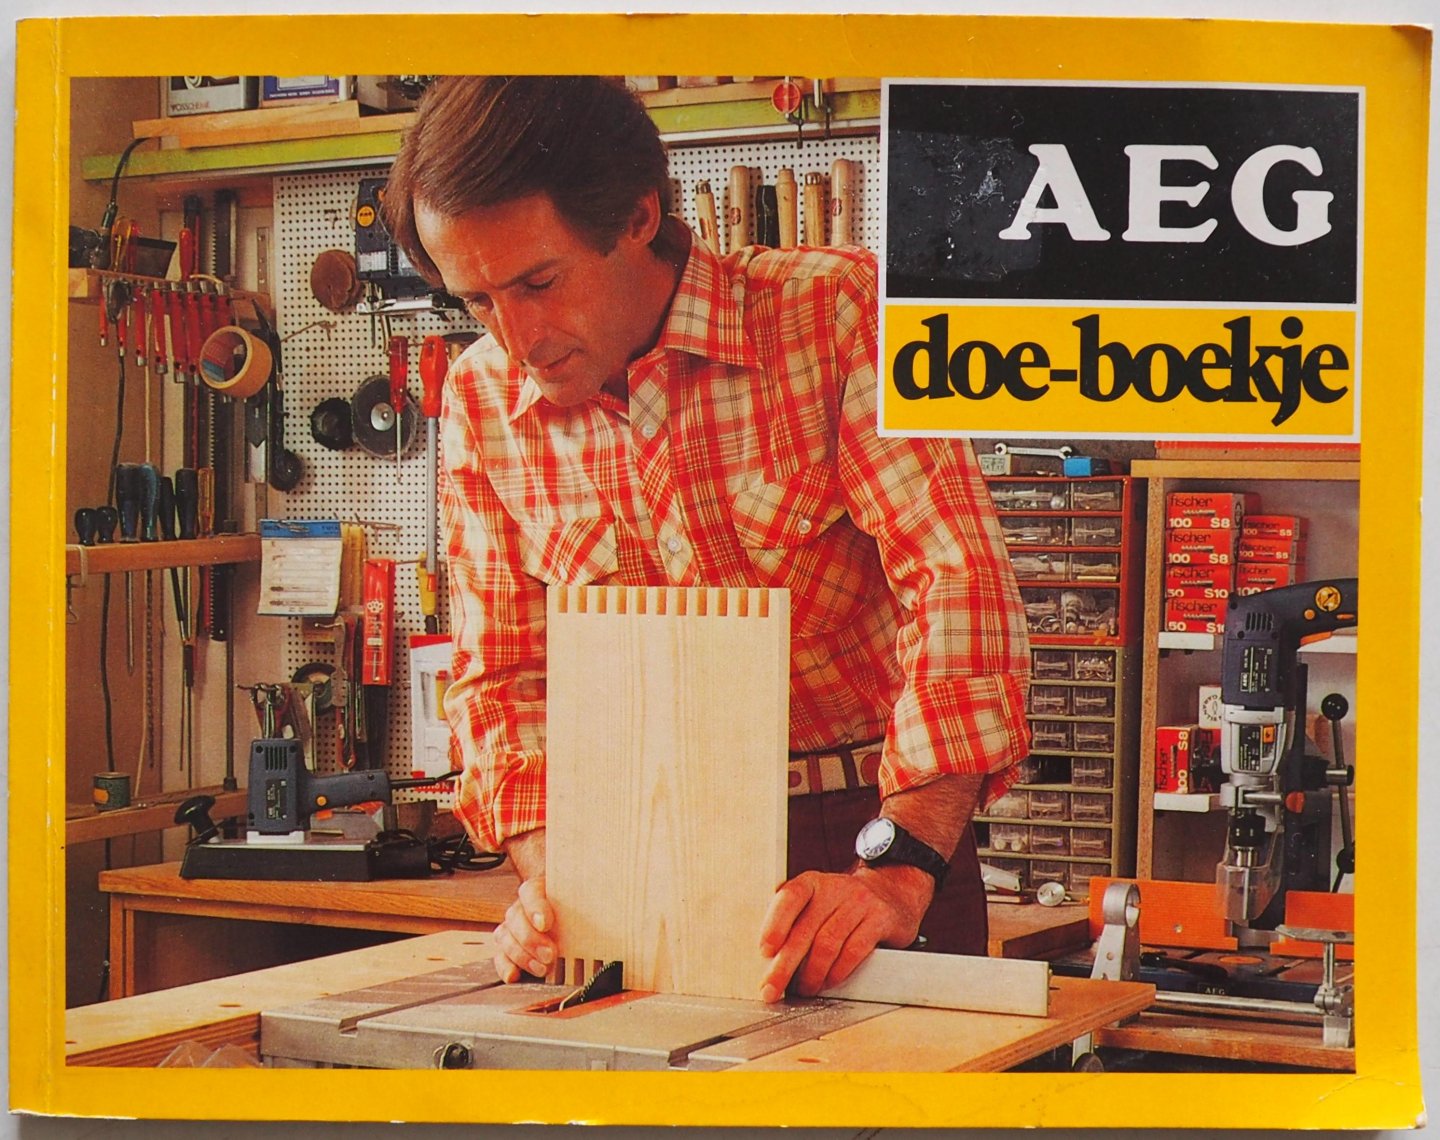 AEG - AEG doe-boekje Een bundeling van praktische tips en een nuttig verlengstuk van de gebruikssaanwijzing bij elektrisch gereedschap